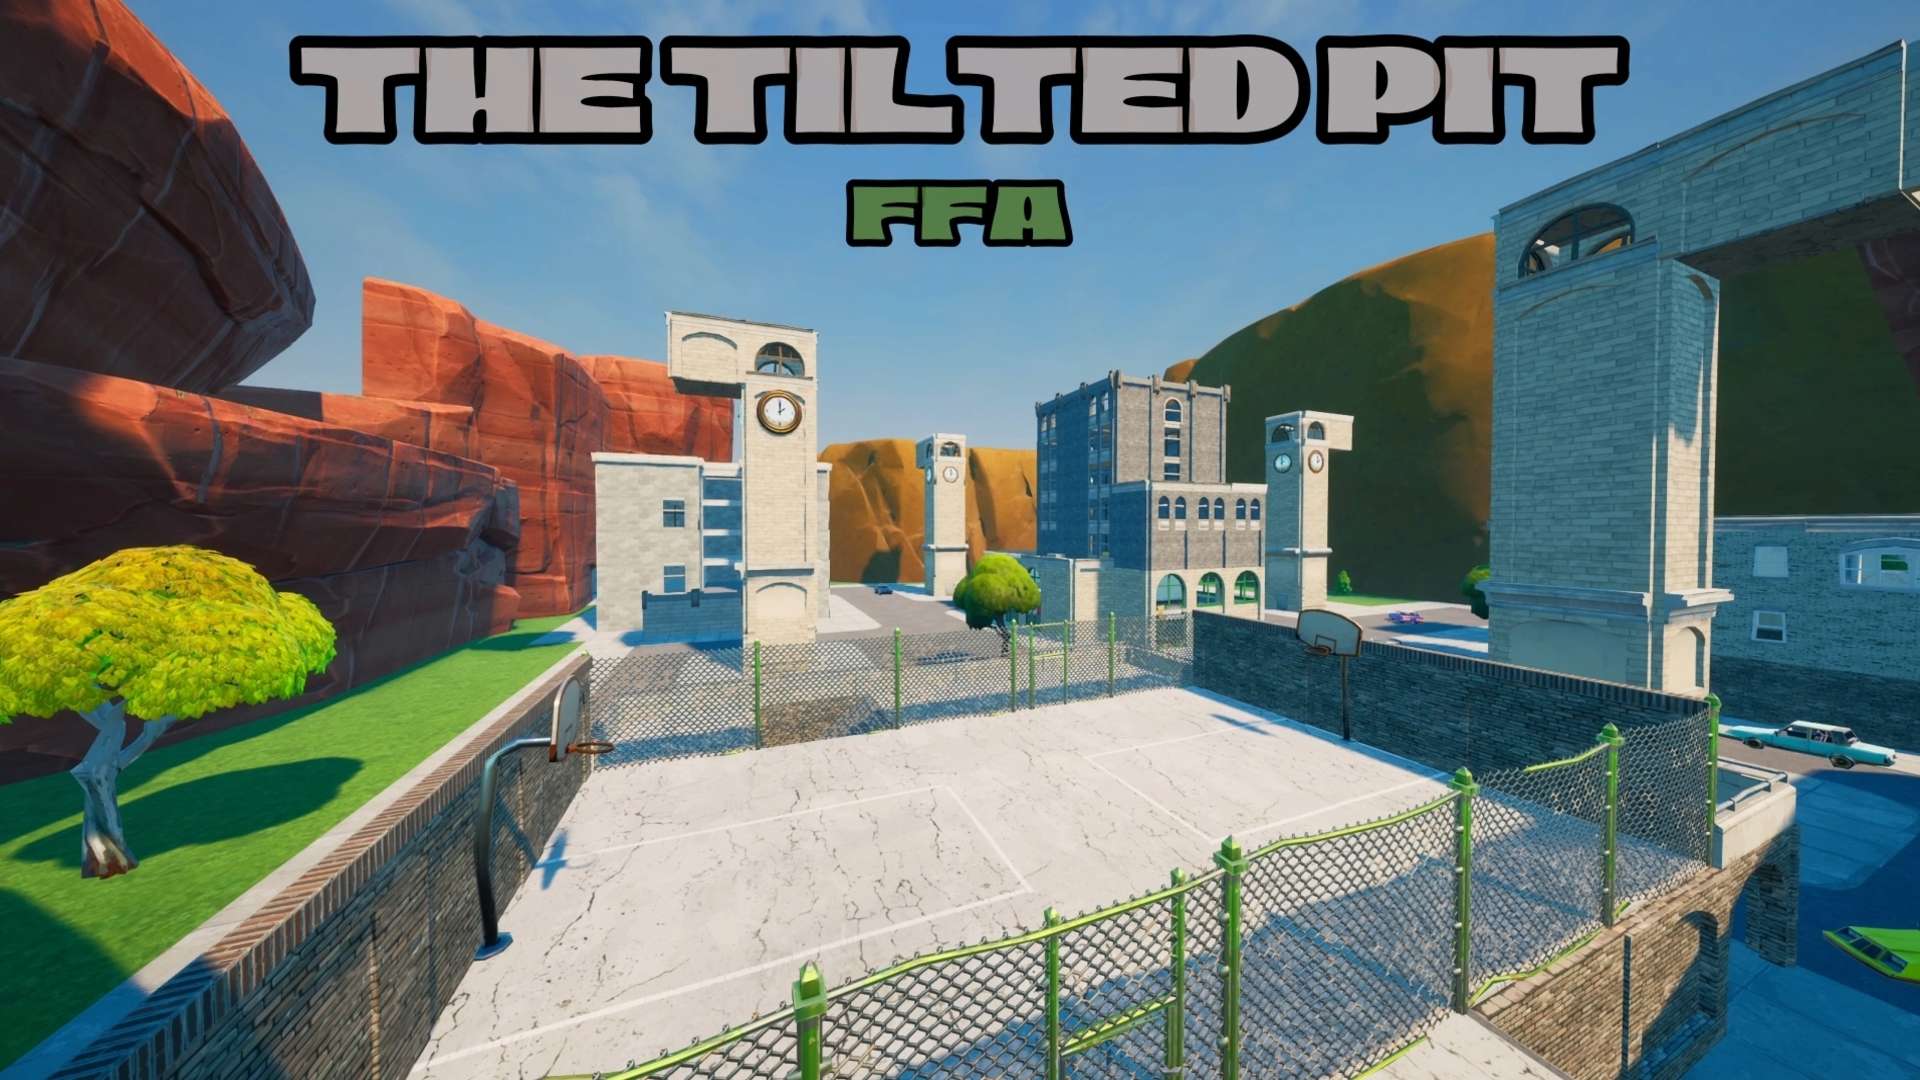 The Tilted Pit Funworld